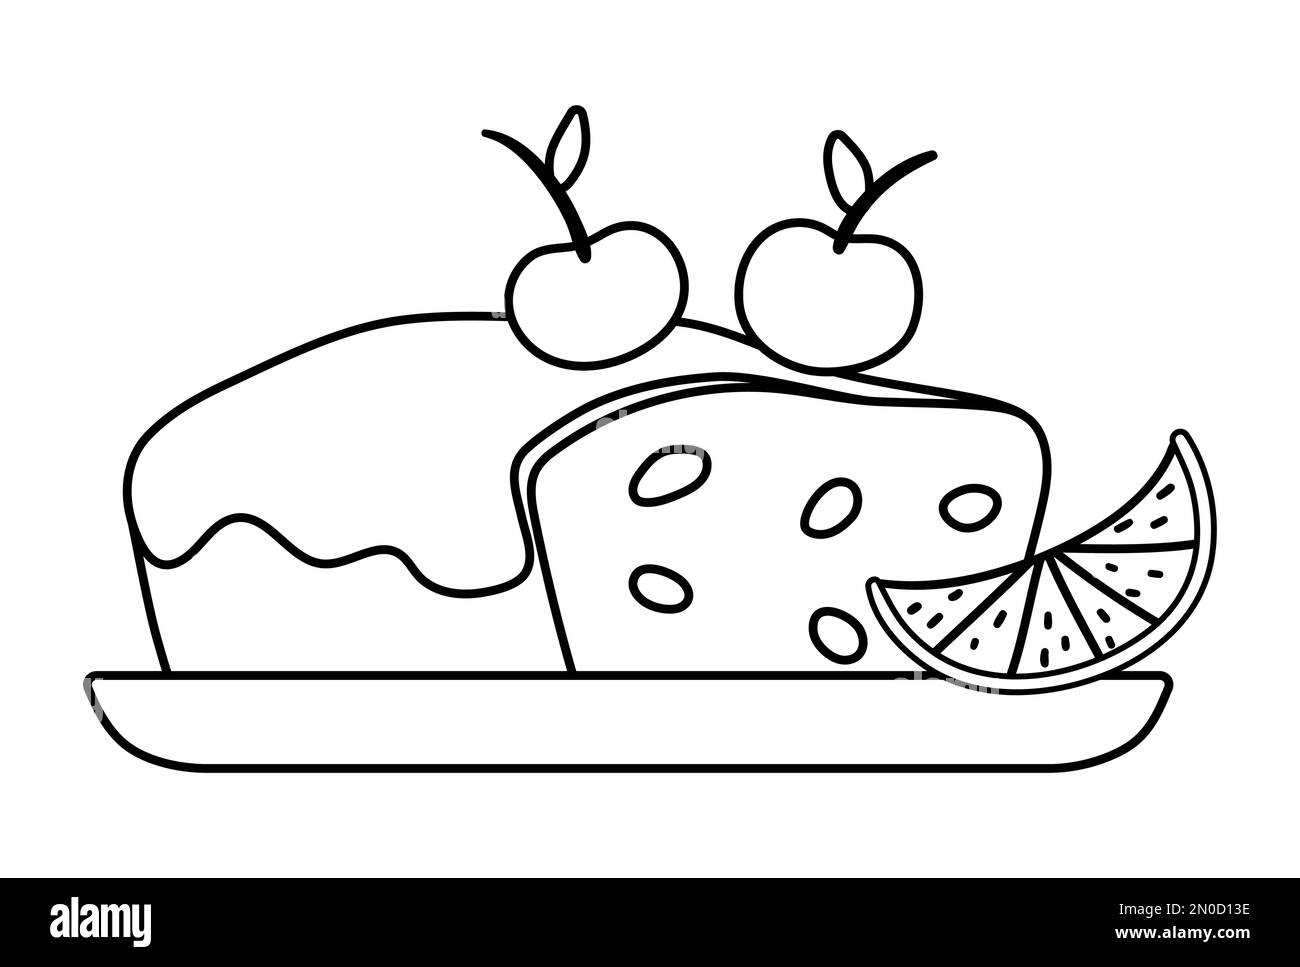 Gâteau de Noël noir et blanc vectoriel avec raisins secs, glaçage et cerises sur fond isolé sur fond blanc. Jolie illustration amusante de la pâtisserie du nouvel an Illustration de Vecteur